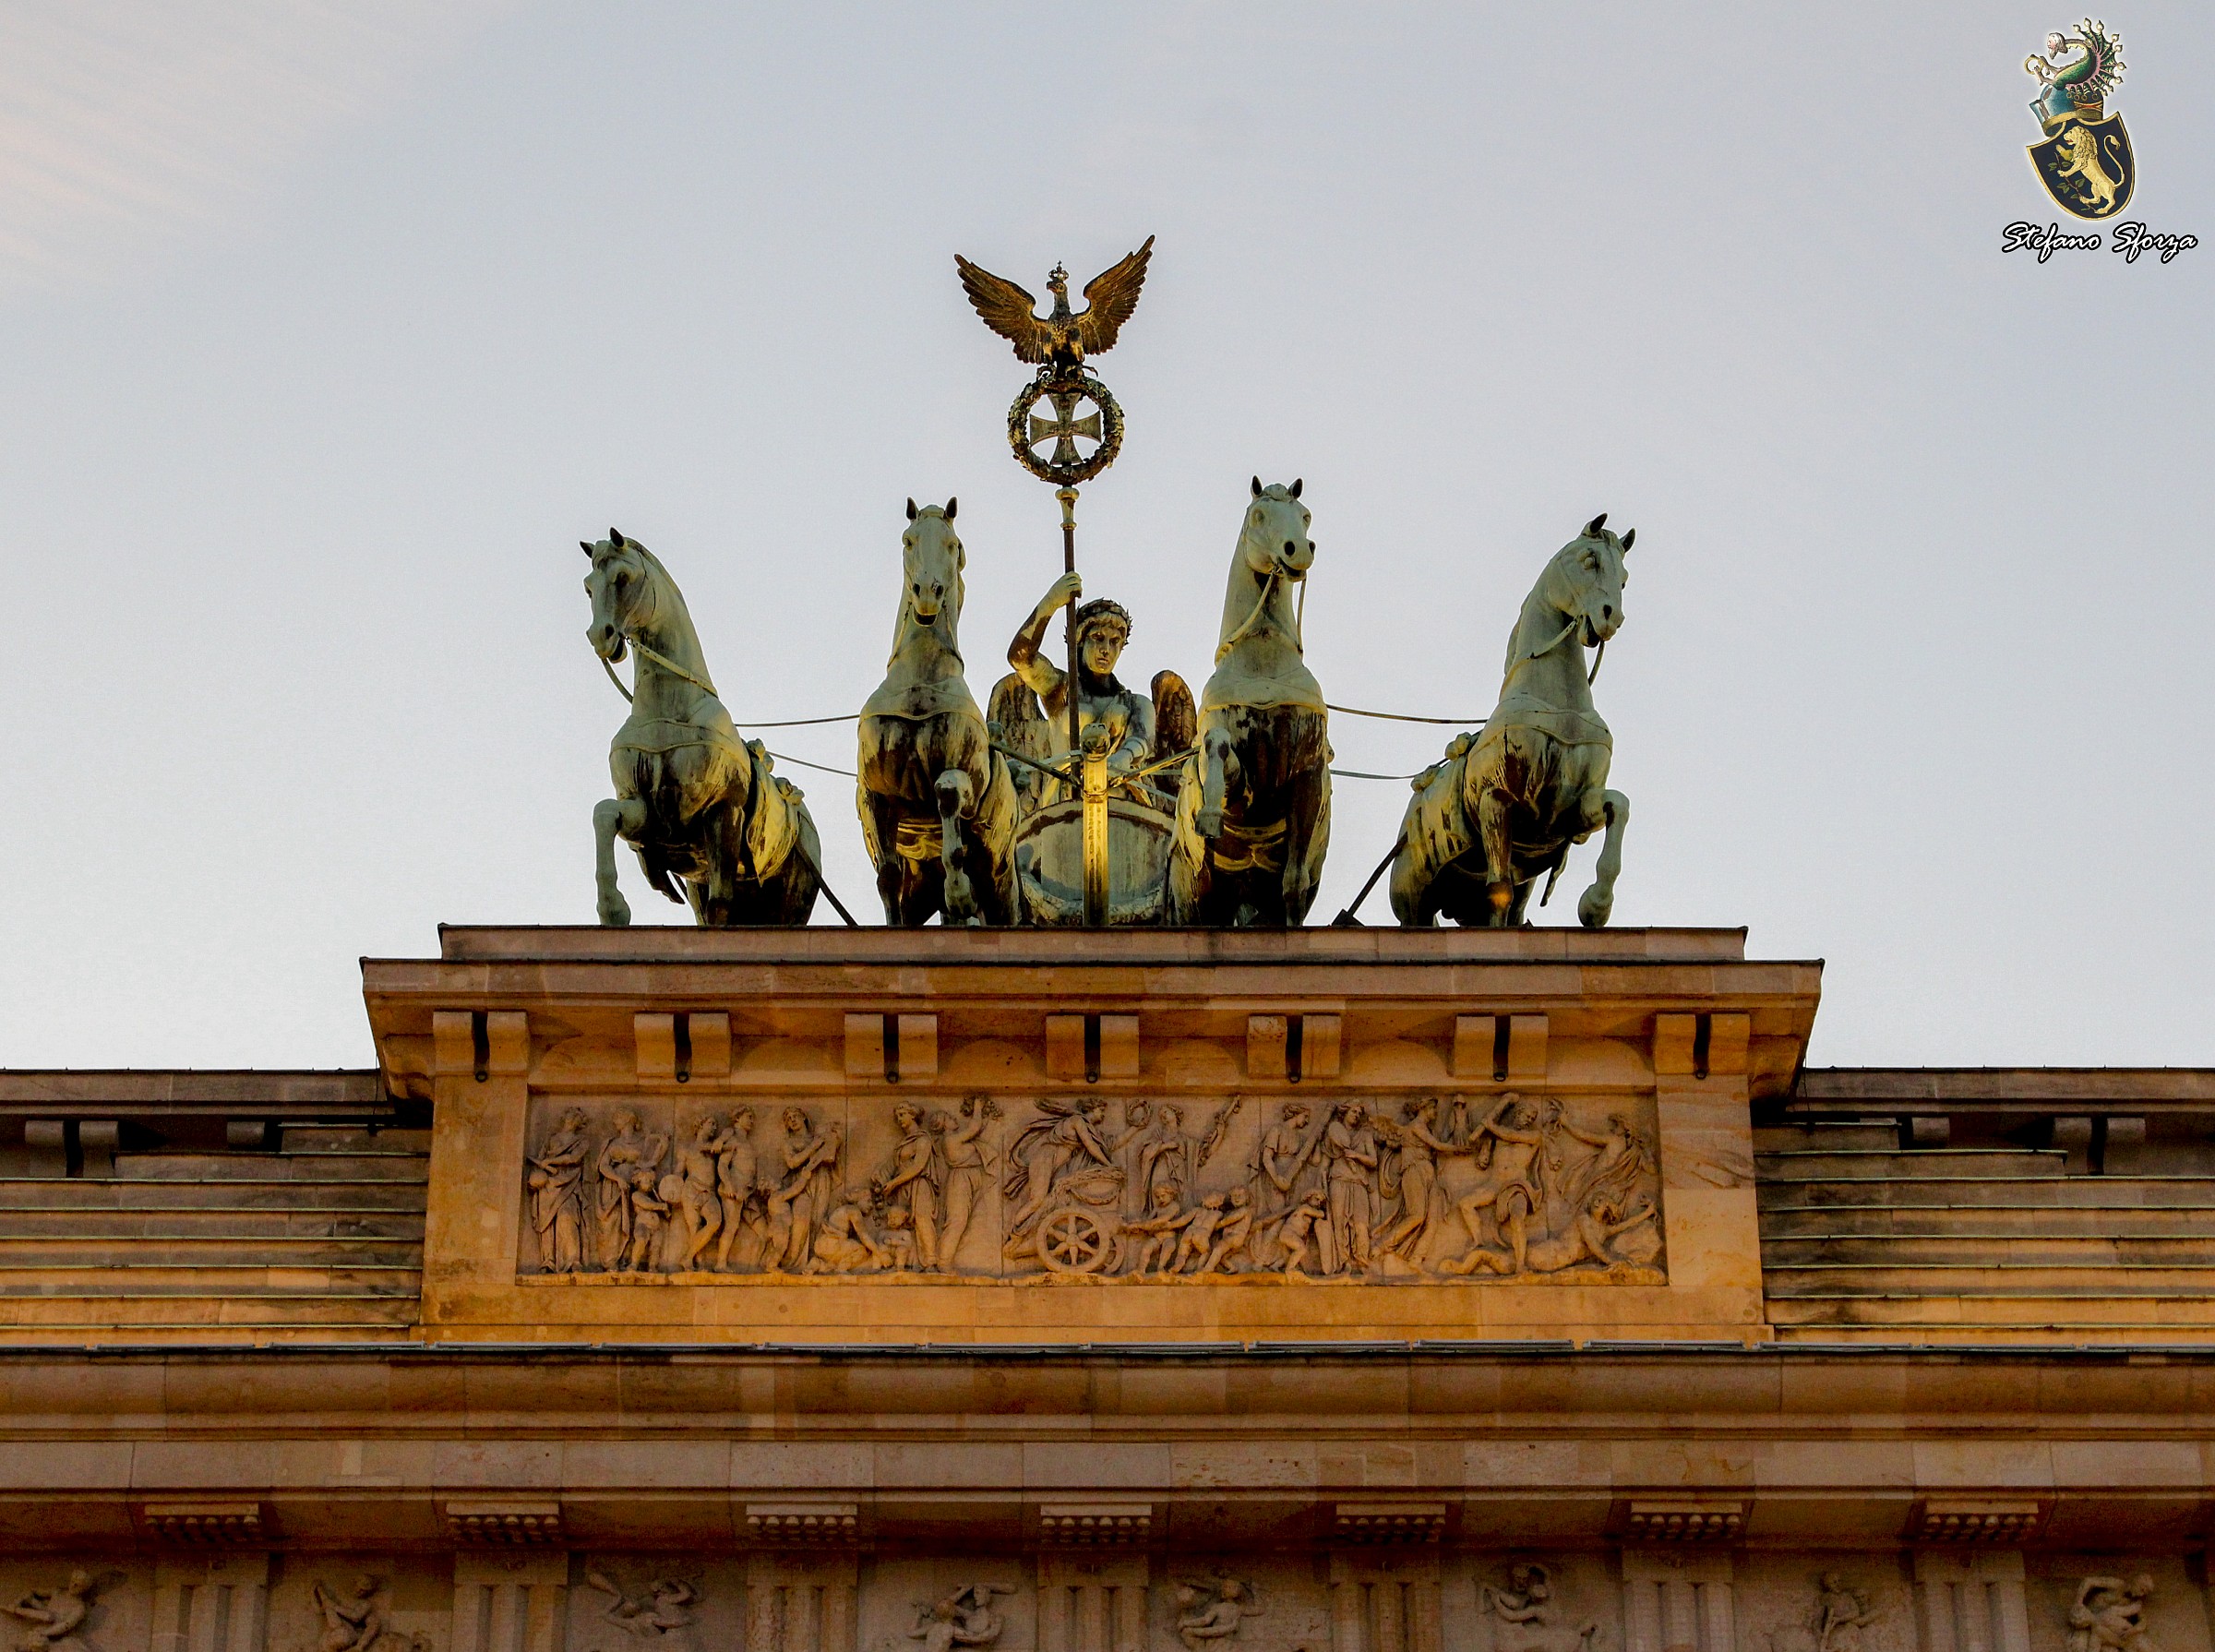 Brandenburg Gate...